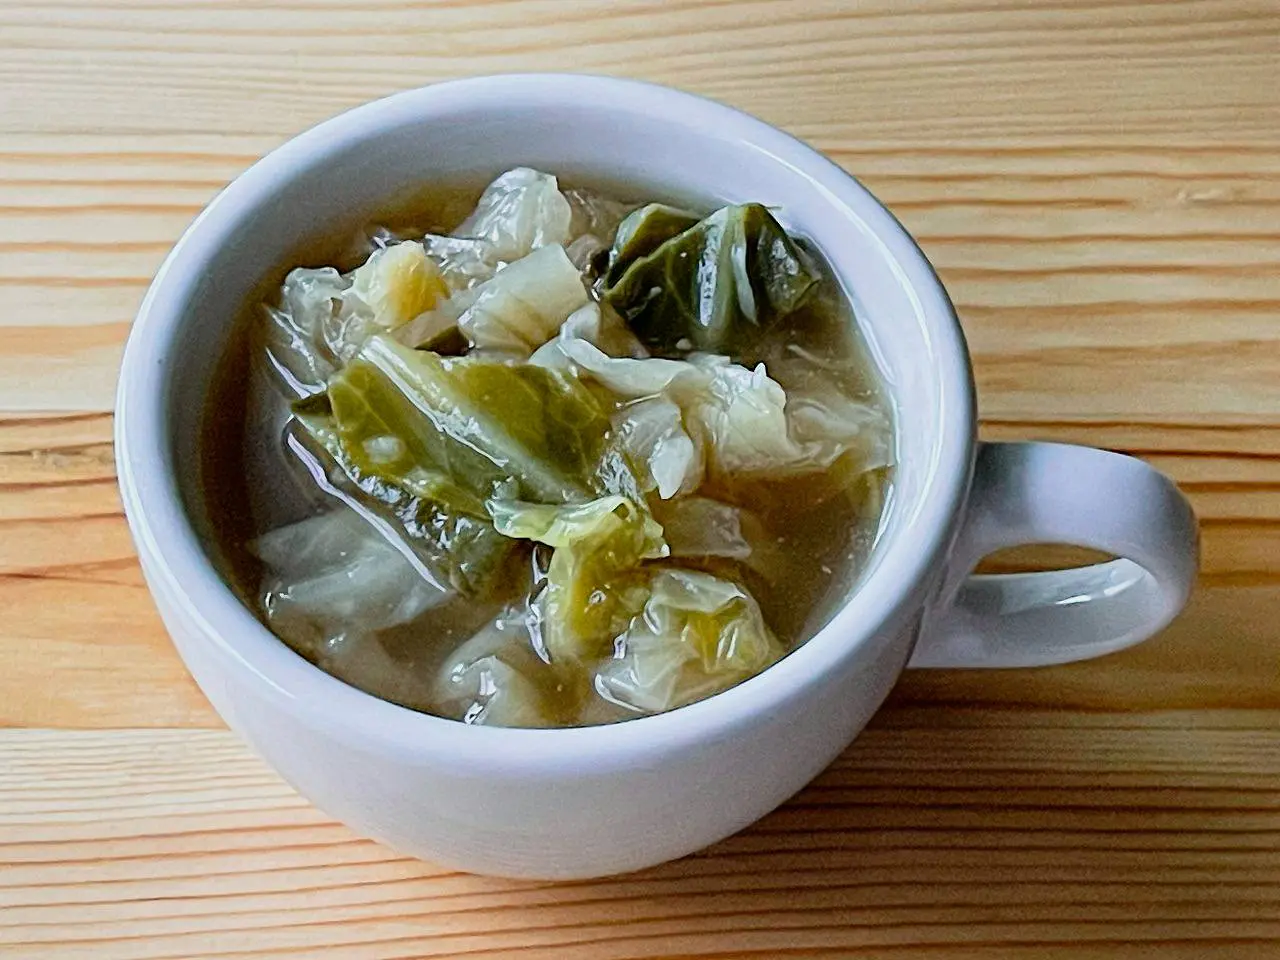 【野菜ひとつ】キャベツのコンソメ醤油スープ